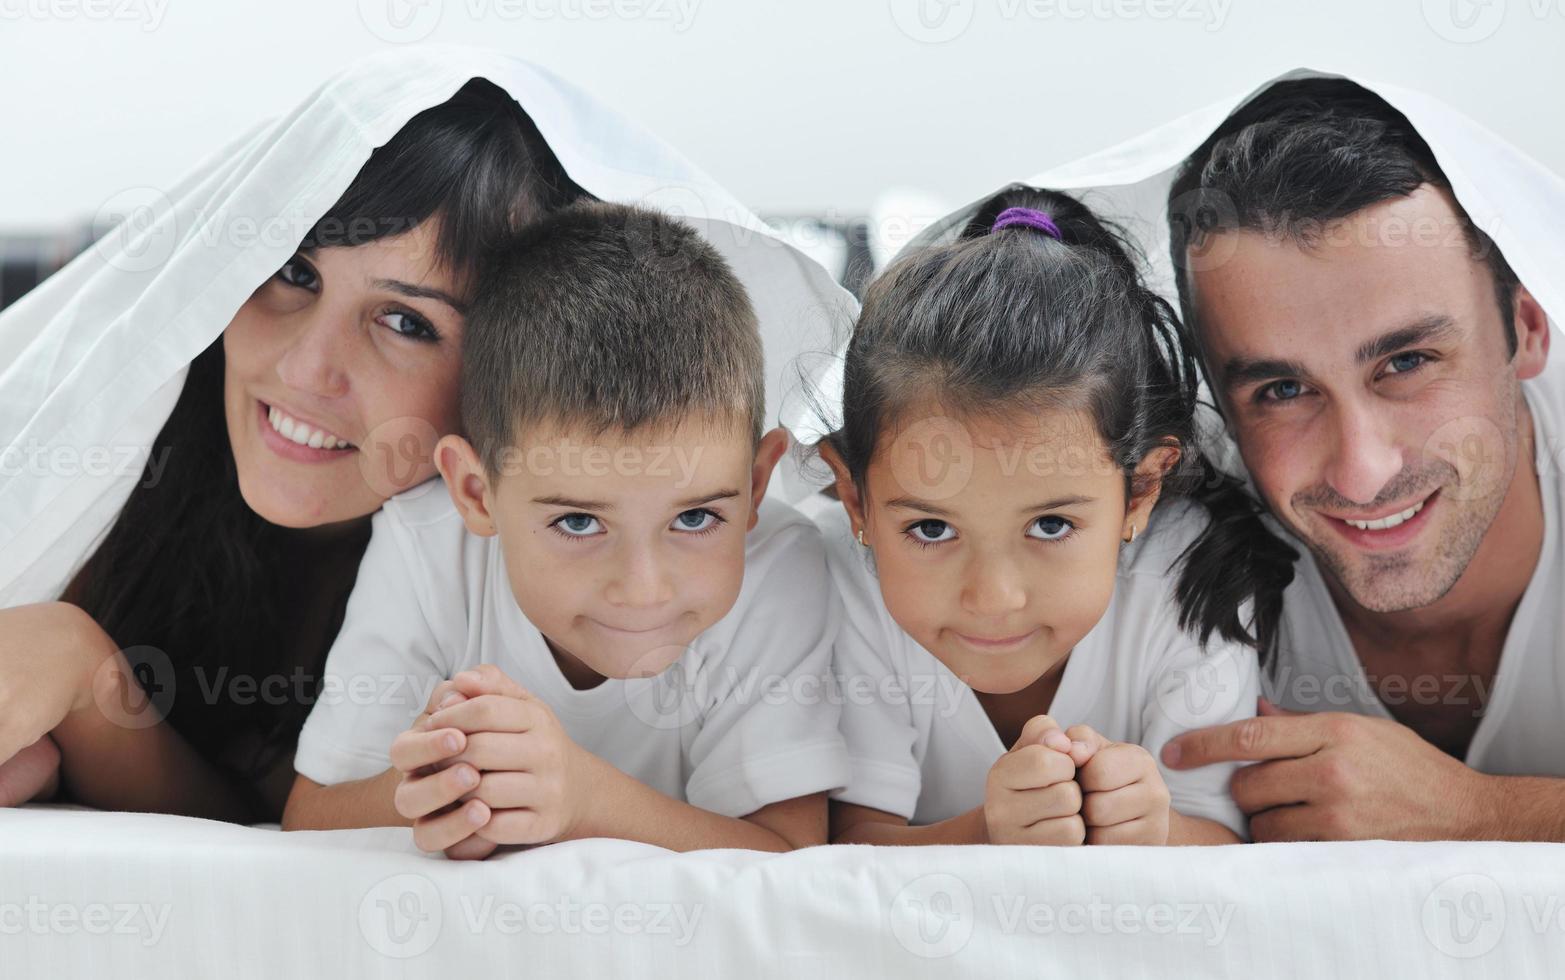 família jovem feliz em seu quarto foto